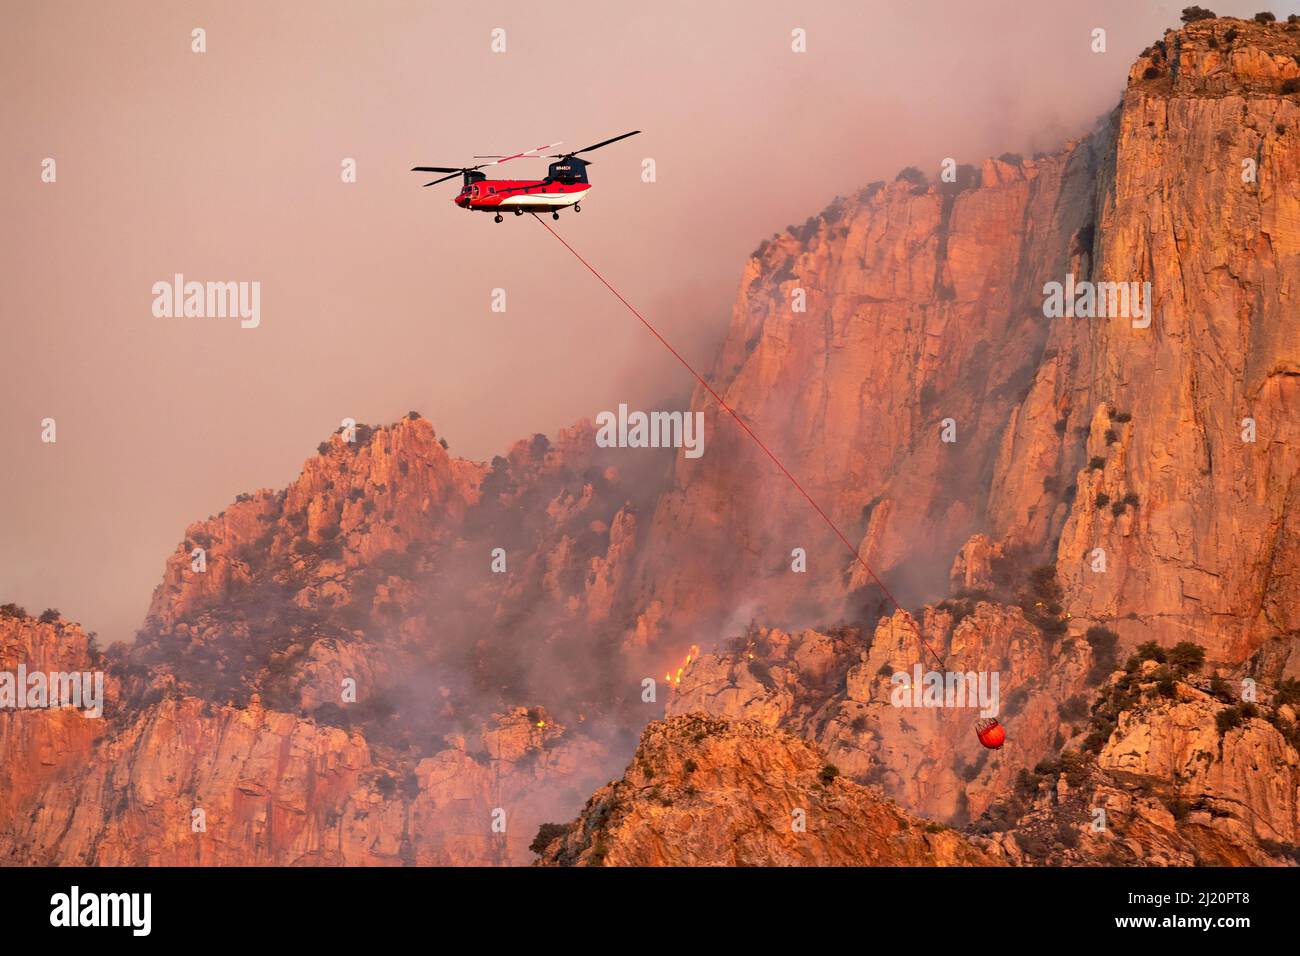 Blitze begannen das Feuer auf steilem, zerklüfteten Gelände, wobei die Feuerwehr des US-Forstdienstes Wildland Firefighters Hubschrauber zur „Bombe“ der heißen Luftwaffe verwendete Stockfoto